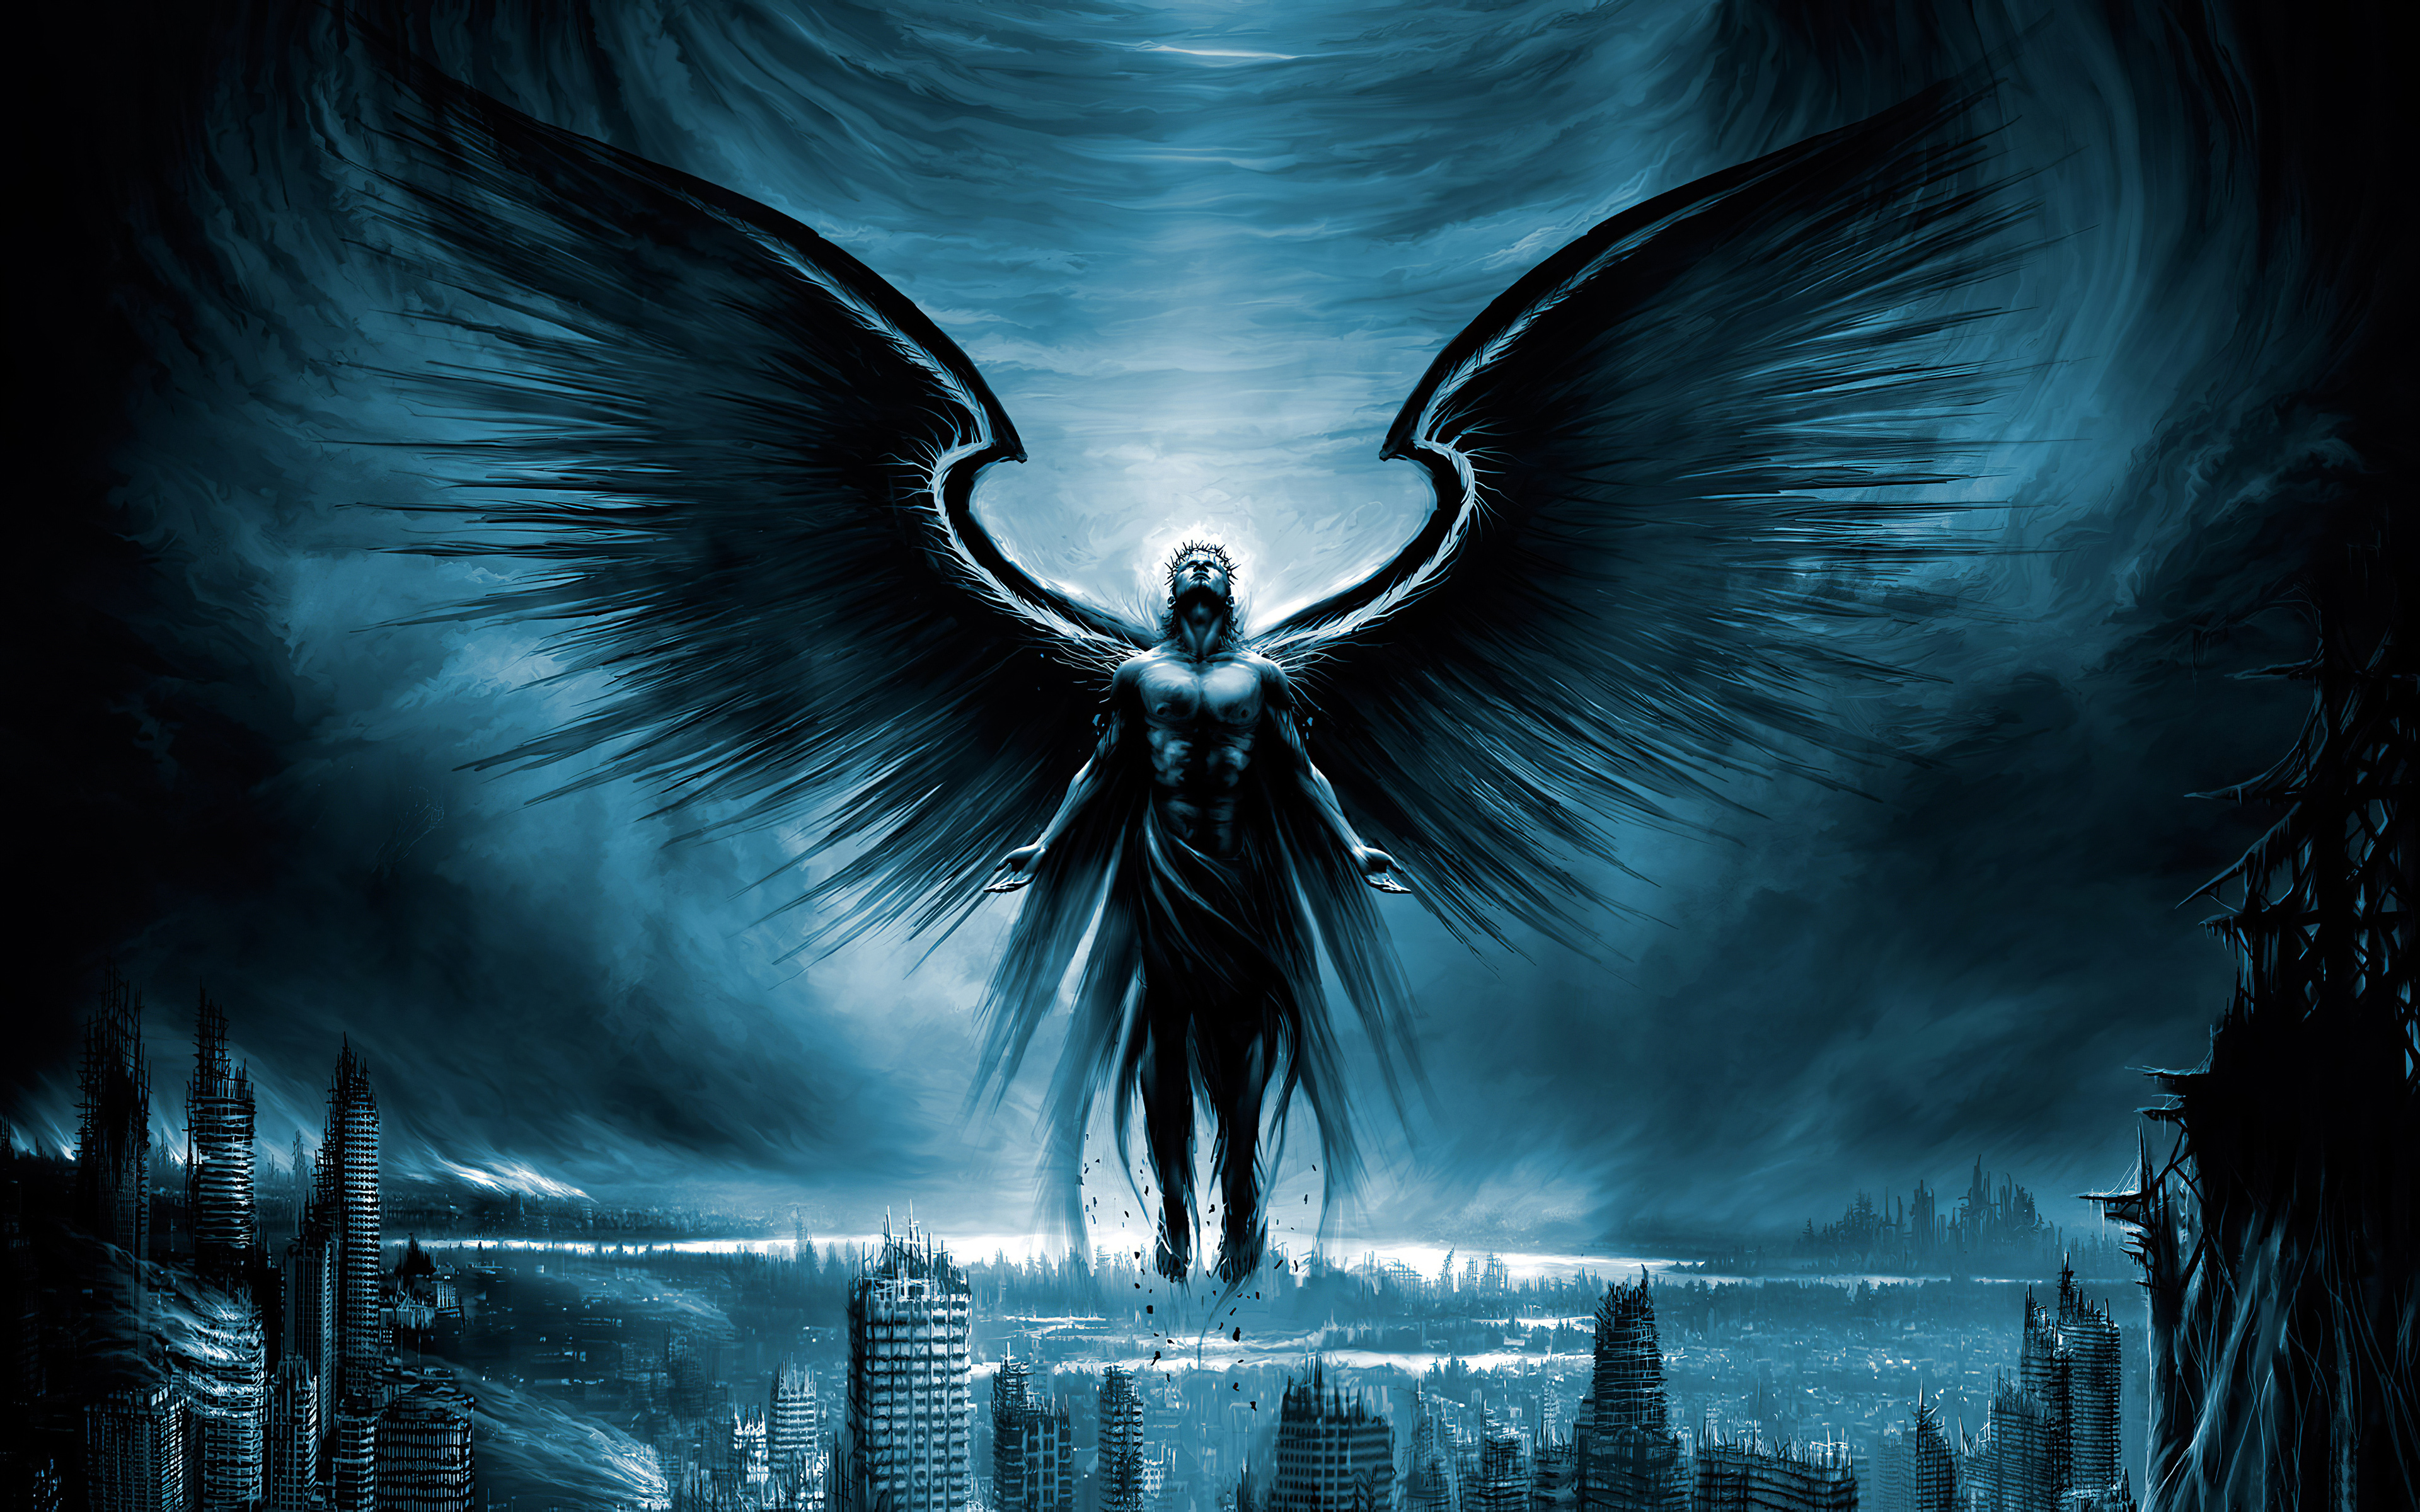 Dark Angels Guru 4k In 3840x2400 Resolution. dark-angels-guru-4k-wu.jpg. 